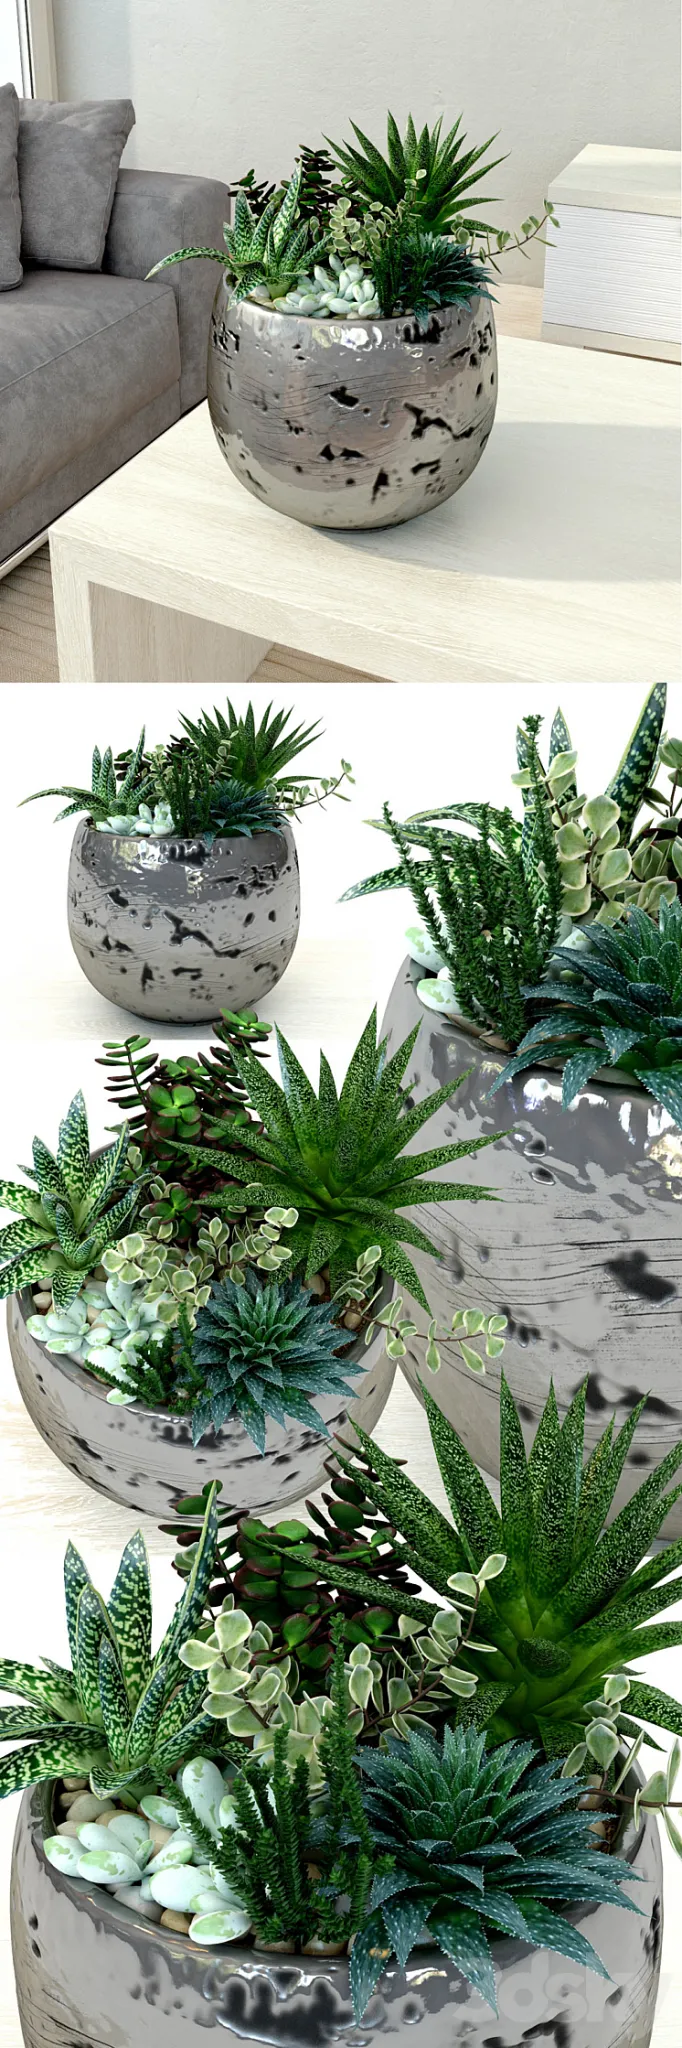 Pots with plants succulents 3DS Max